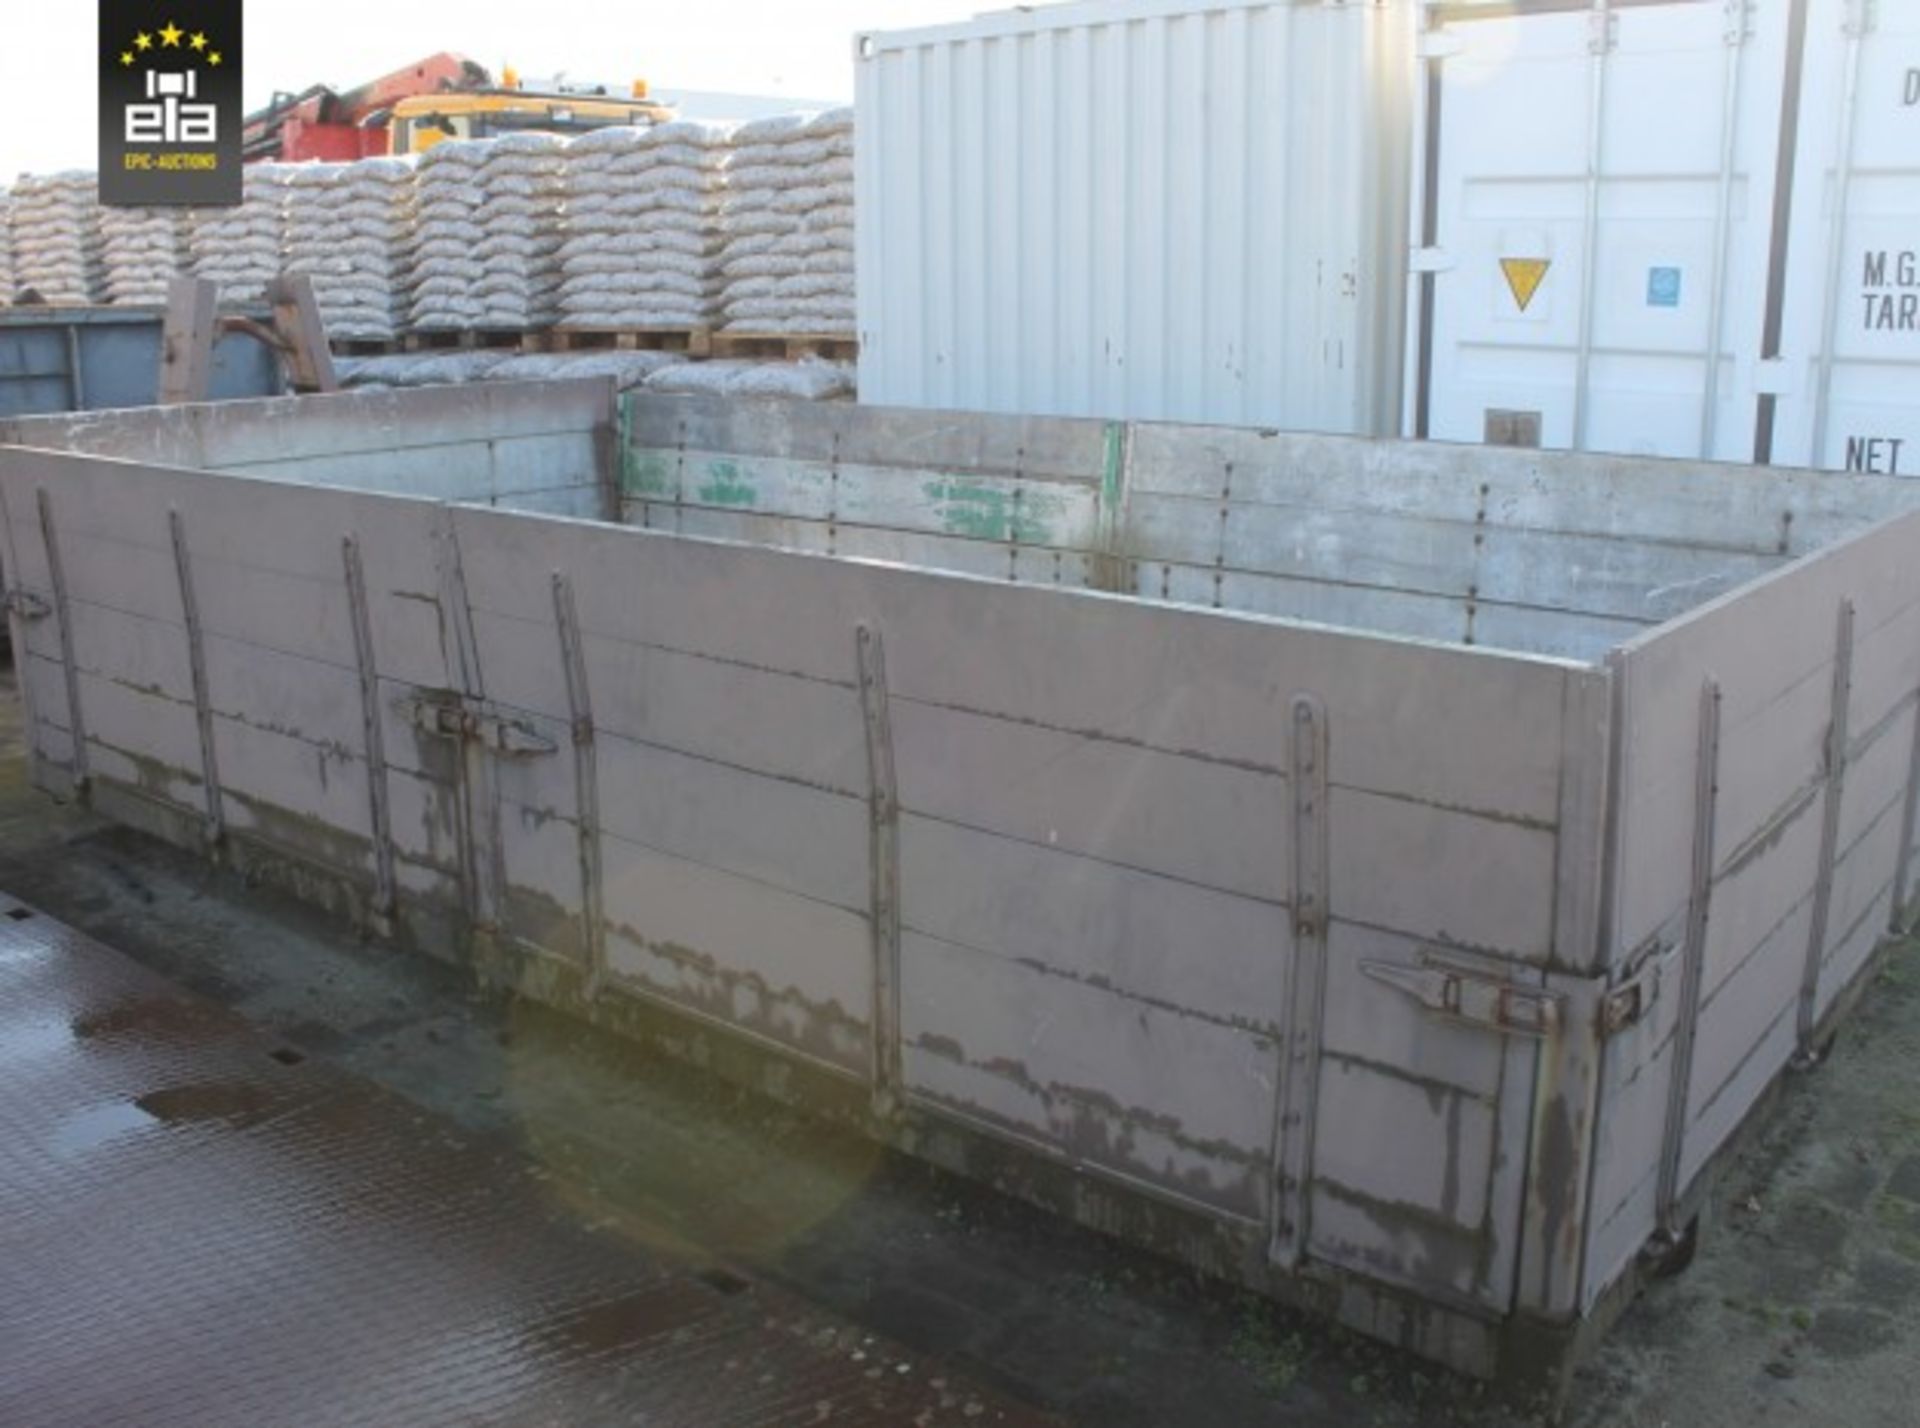 Haakarmcontainer met aluminium schotten 20140718 - Image 2 of 4